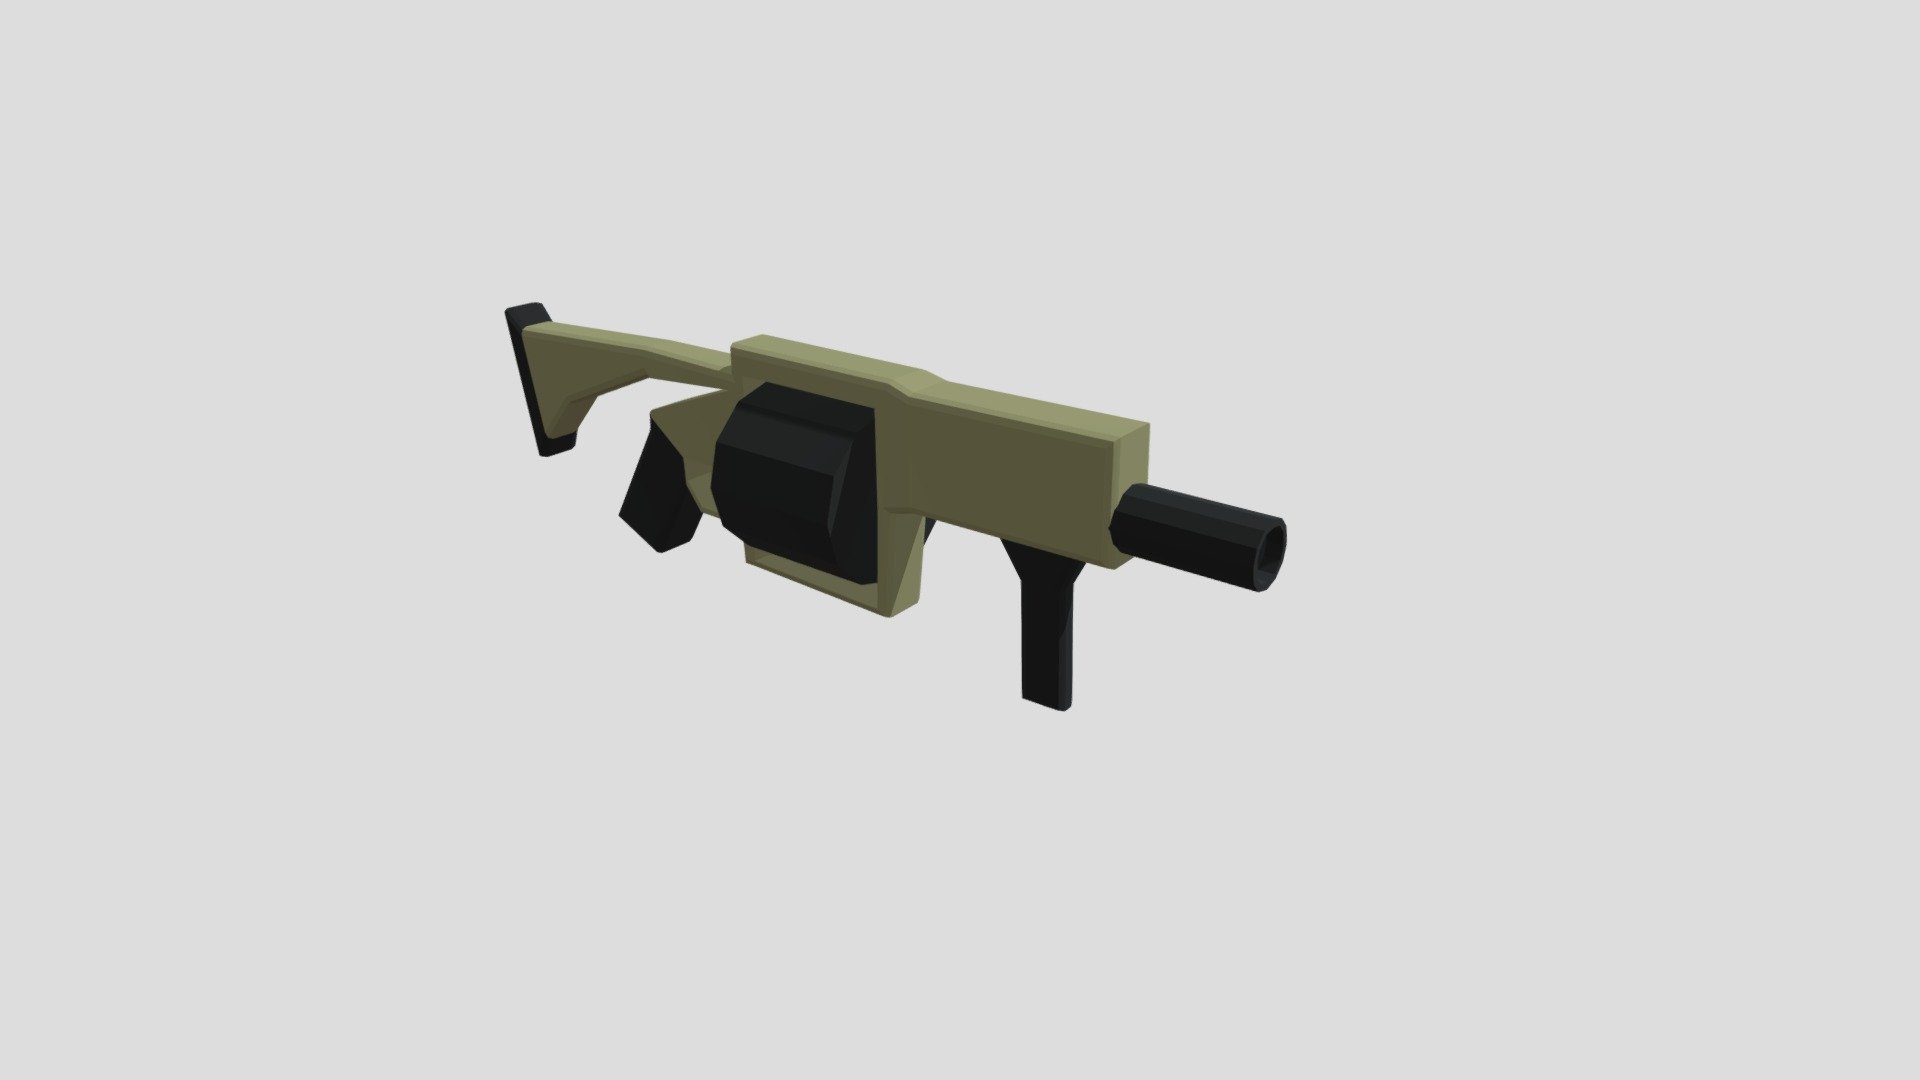 Lowpoly Grenade Launcher MilkorMGL - 3D model by kashyapstudiosx ...